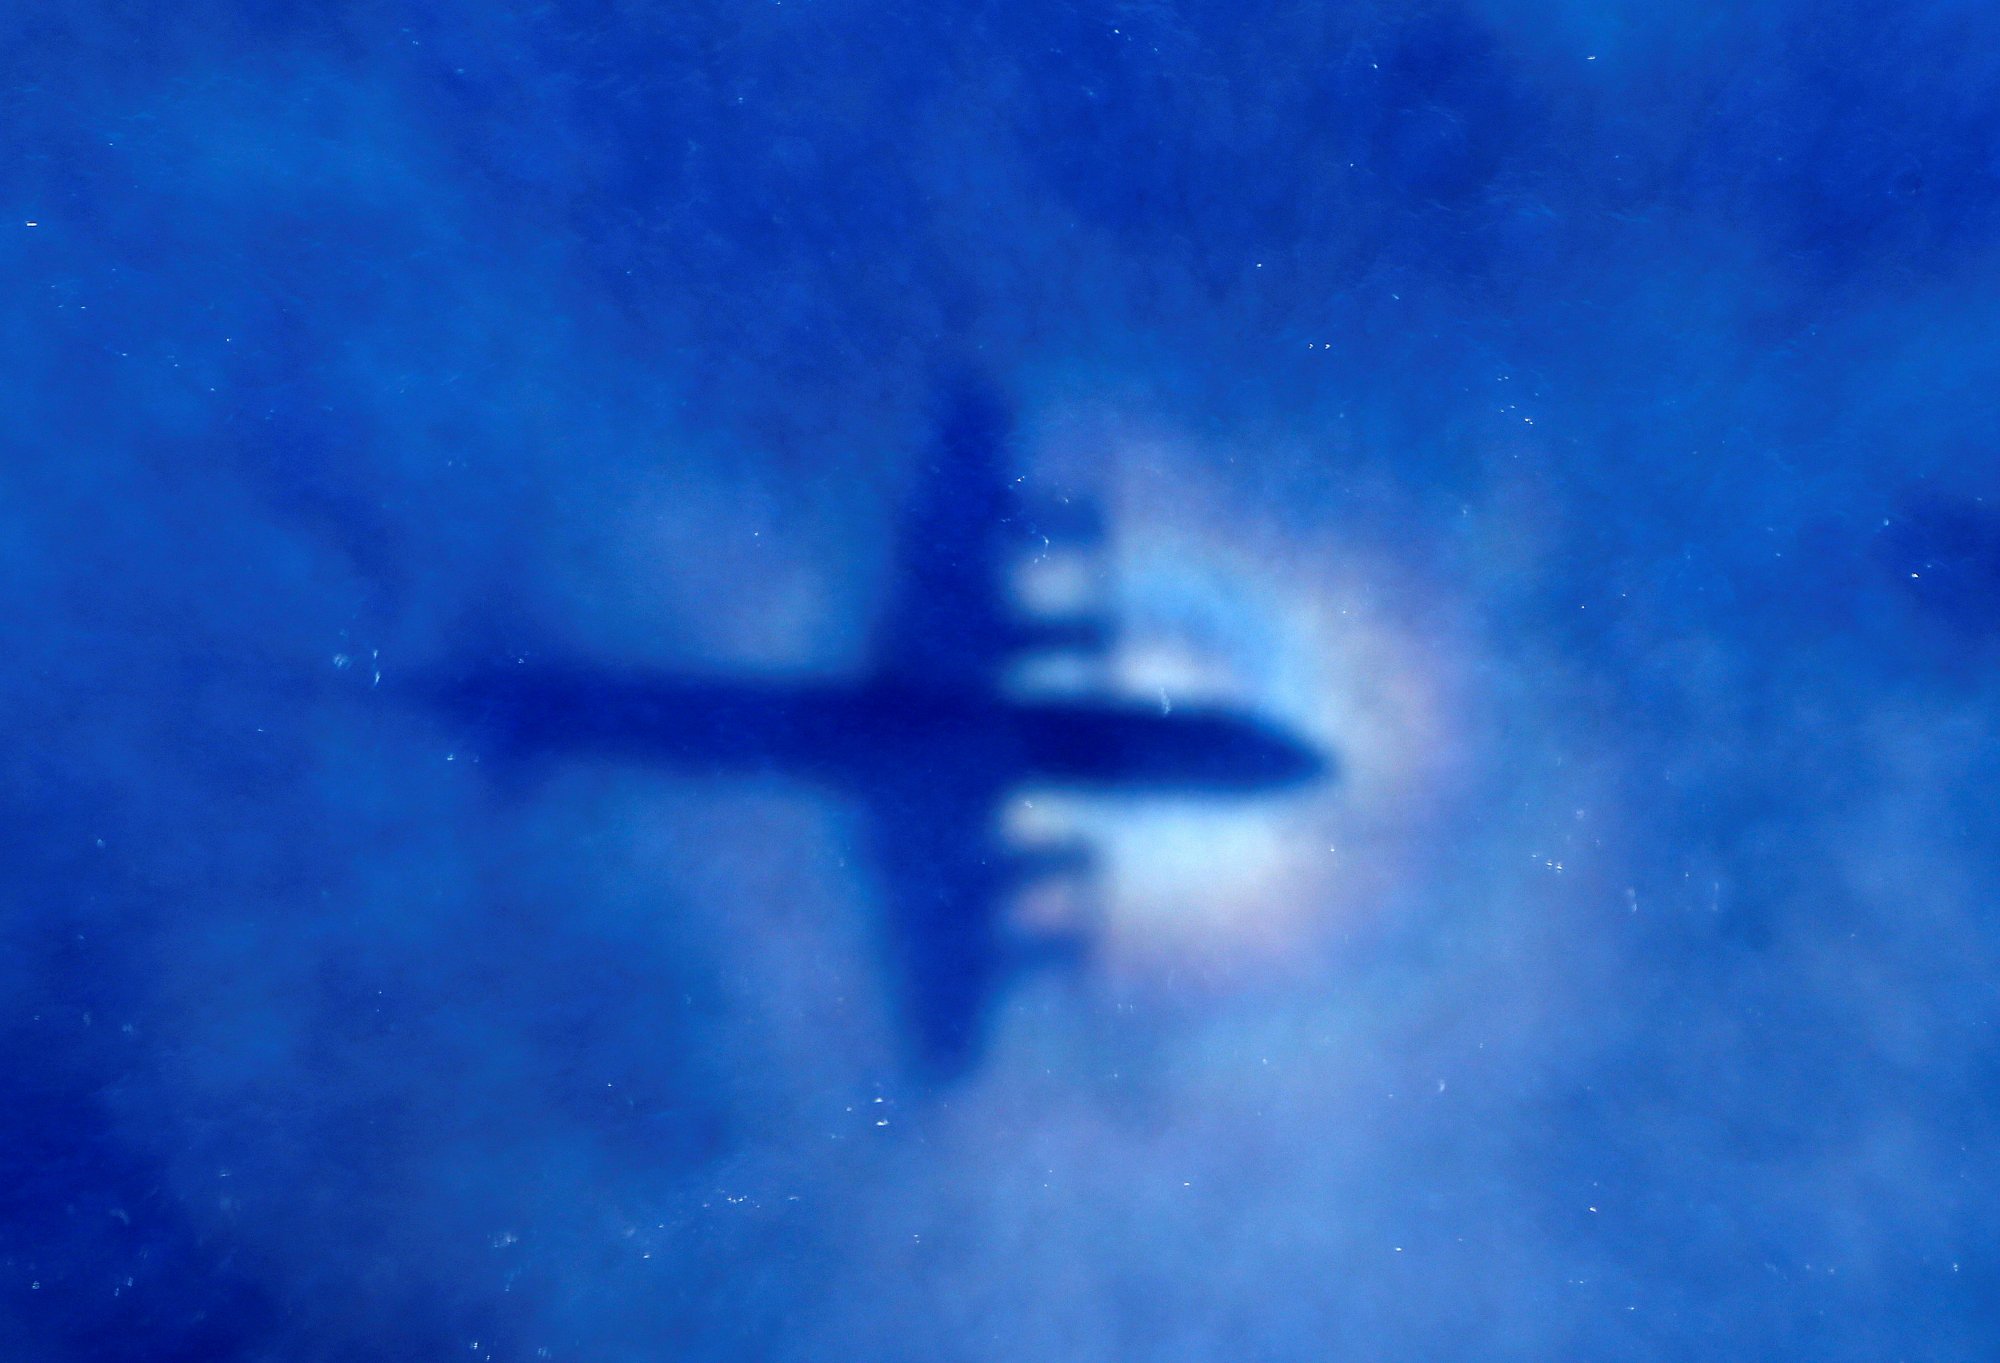 Σκόπιμη συντριβή για τη μοιραία πτήση MH370;